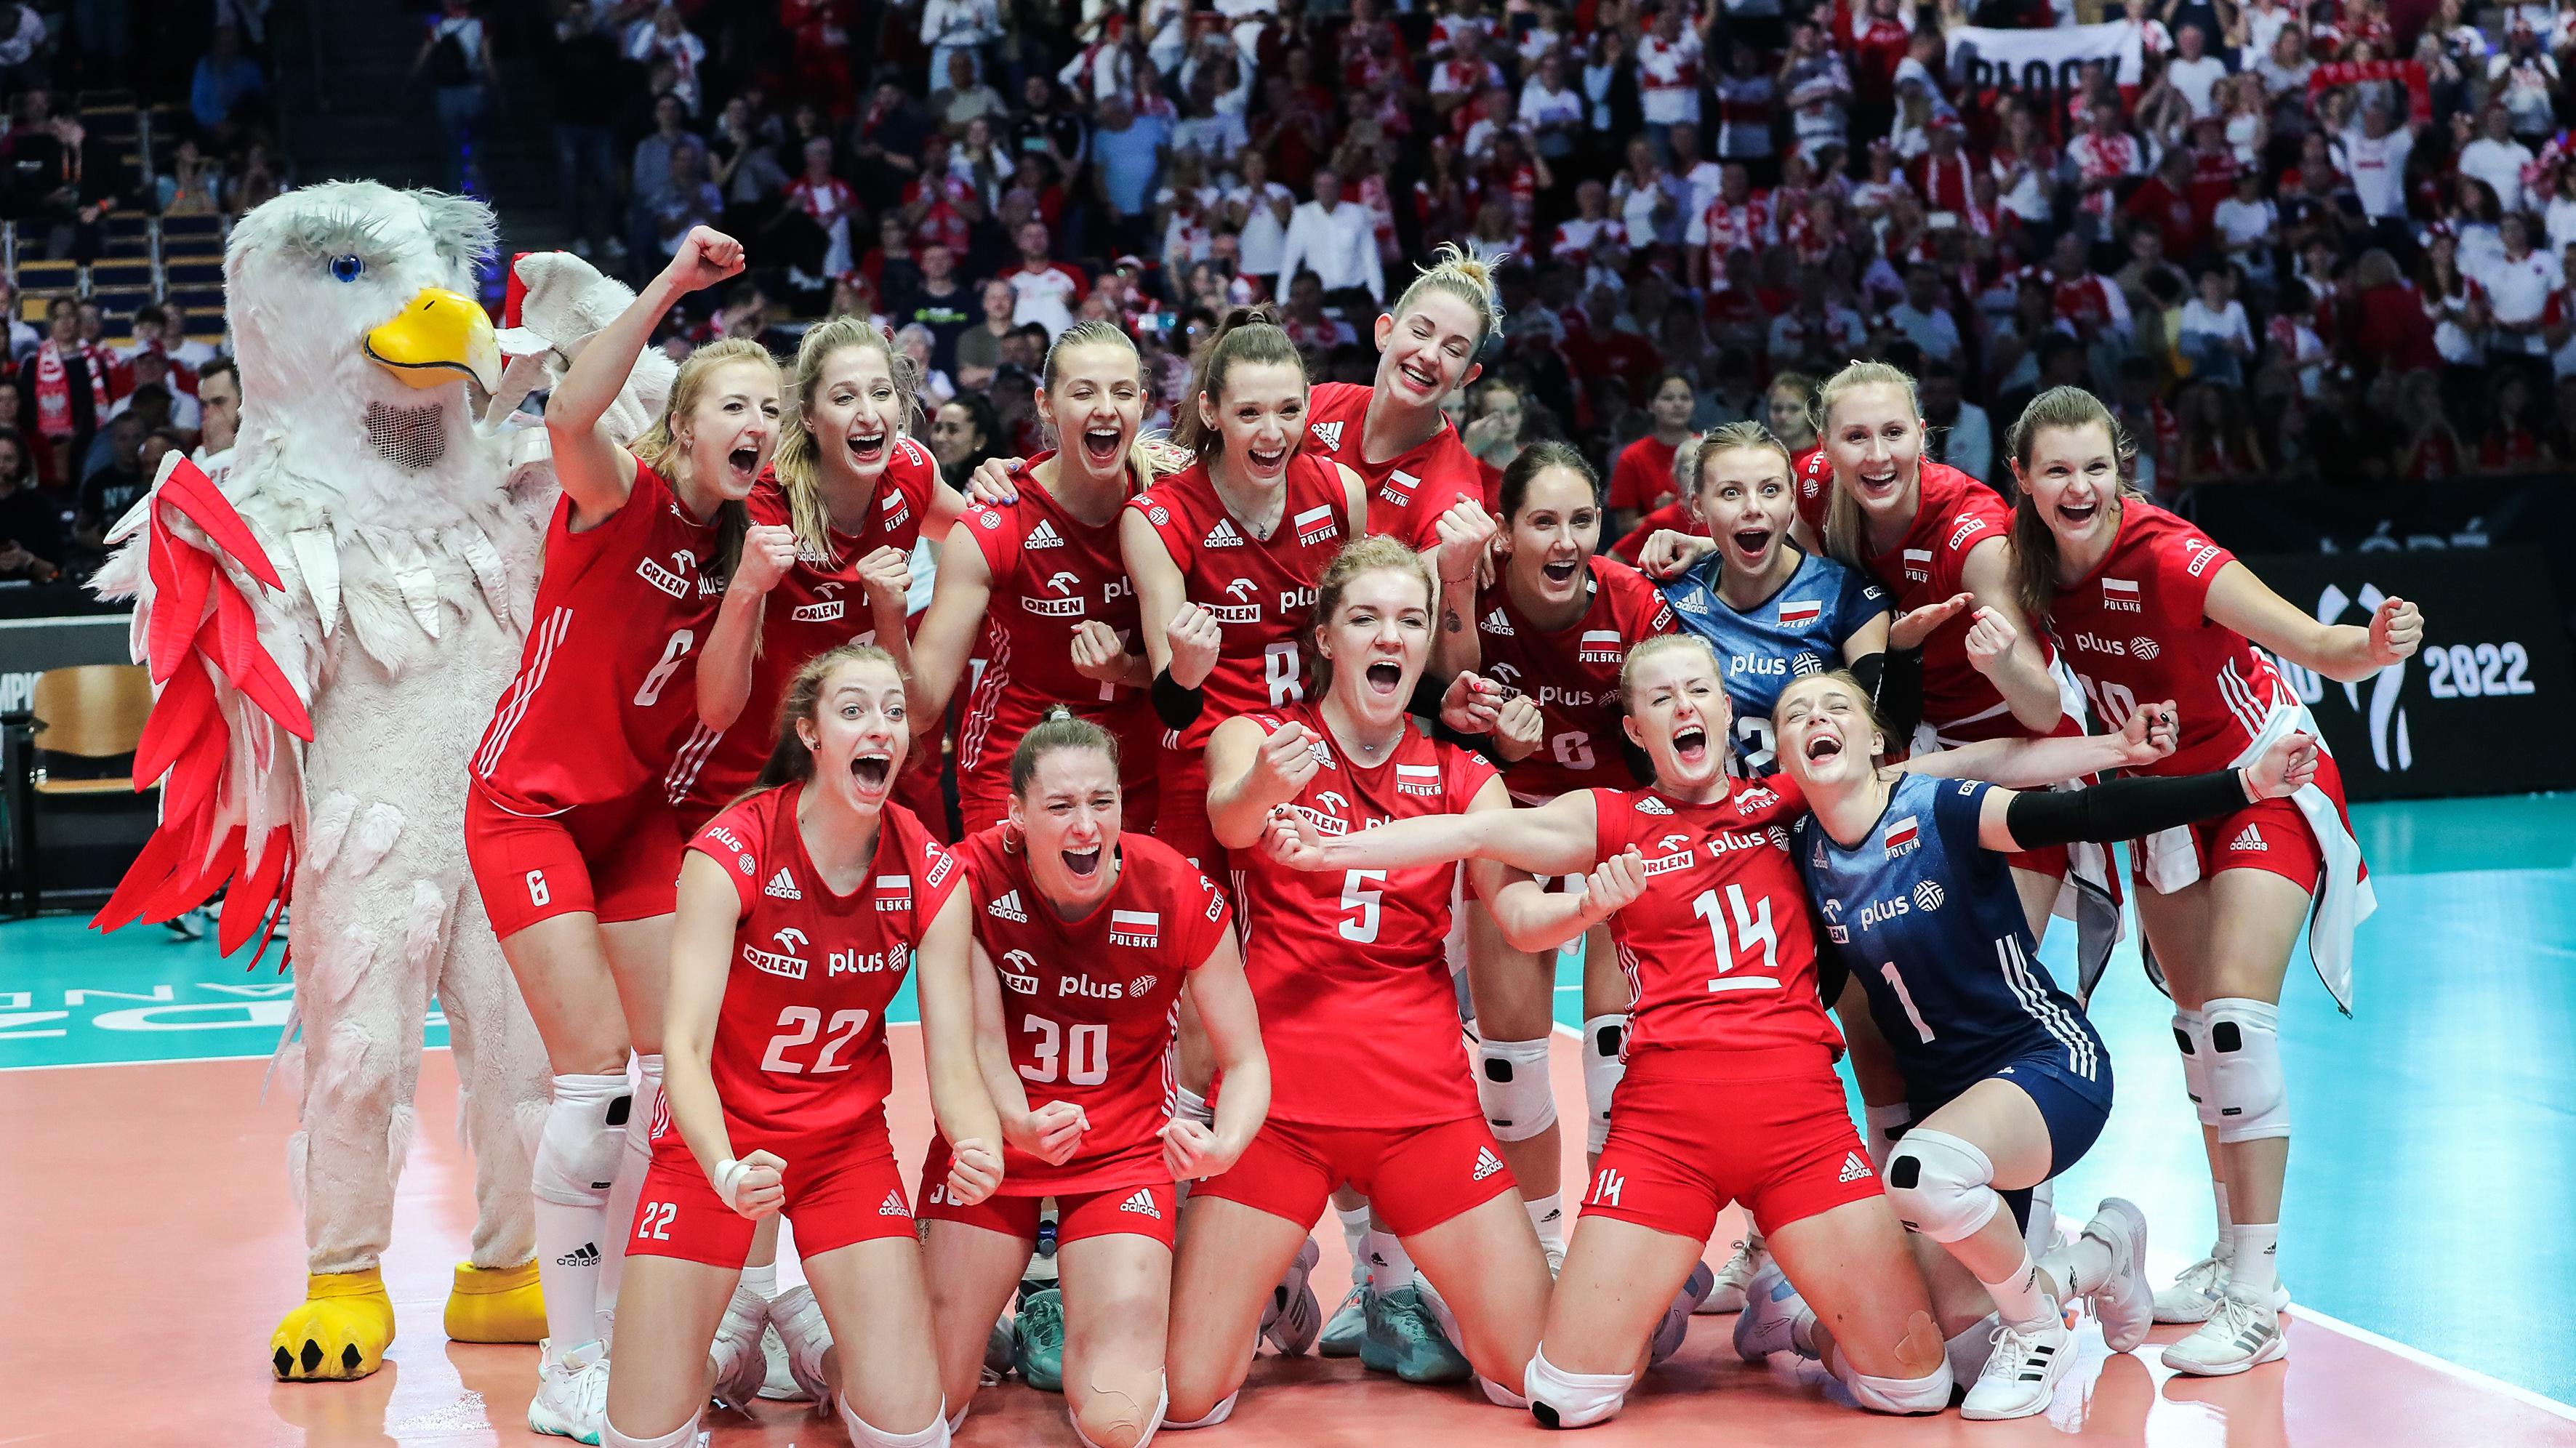 Oto nasze bohaterki! Polskie siatkarki dały nam wielką radość - Przegląd  Sportowy